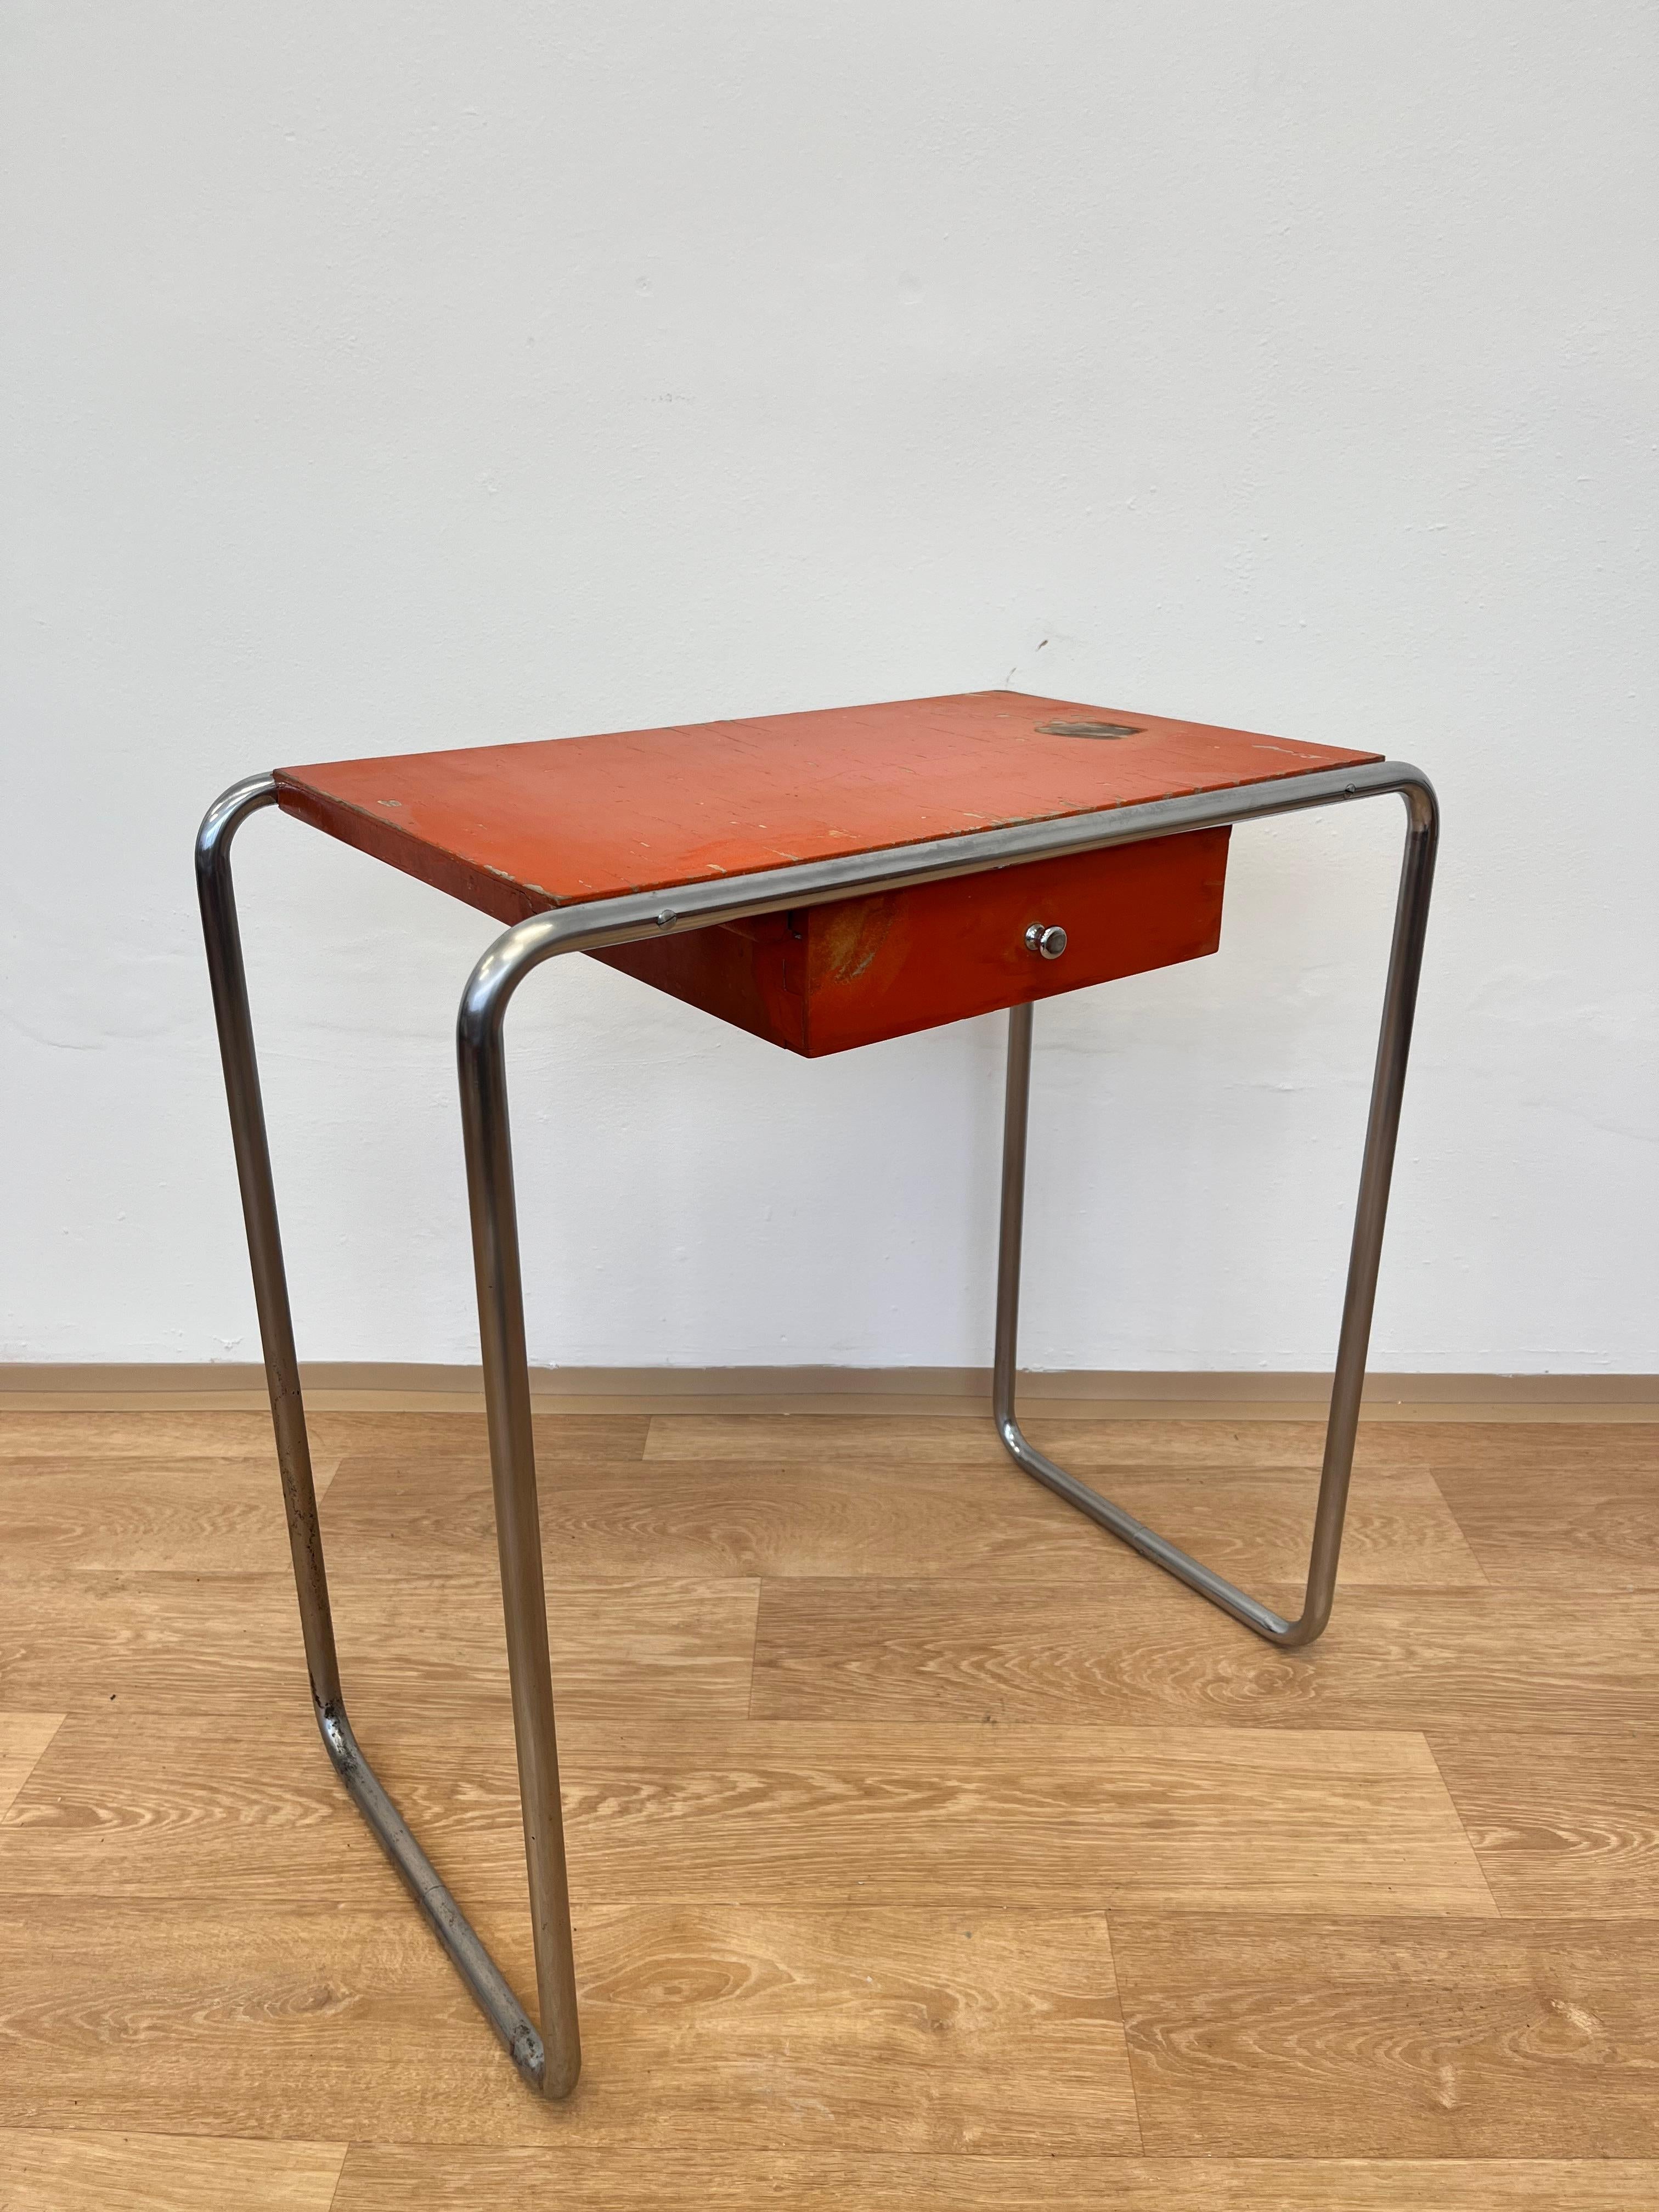 Bauhaus tubular steel Chrome Table model R12 by Robert Slezak - 1930s For Sale 3